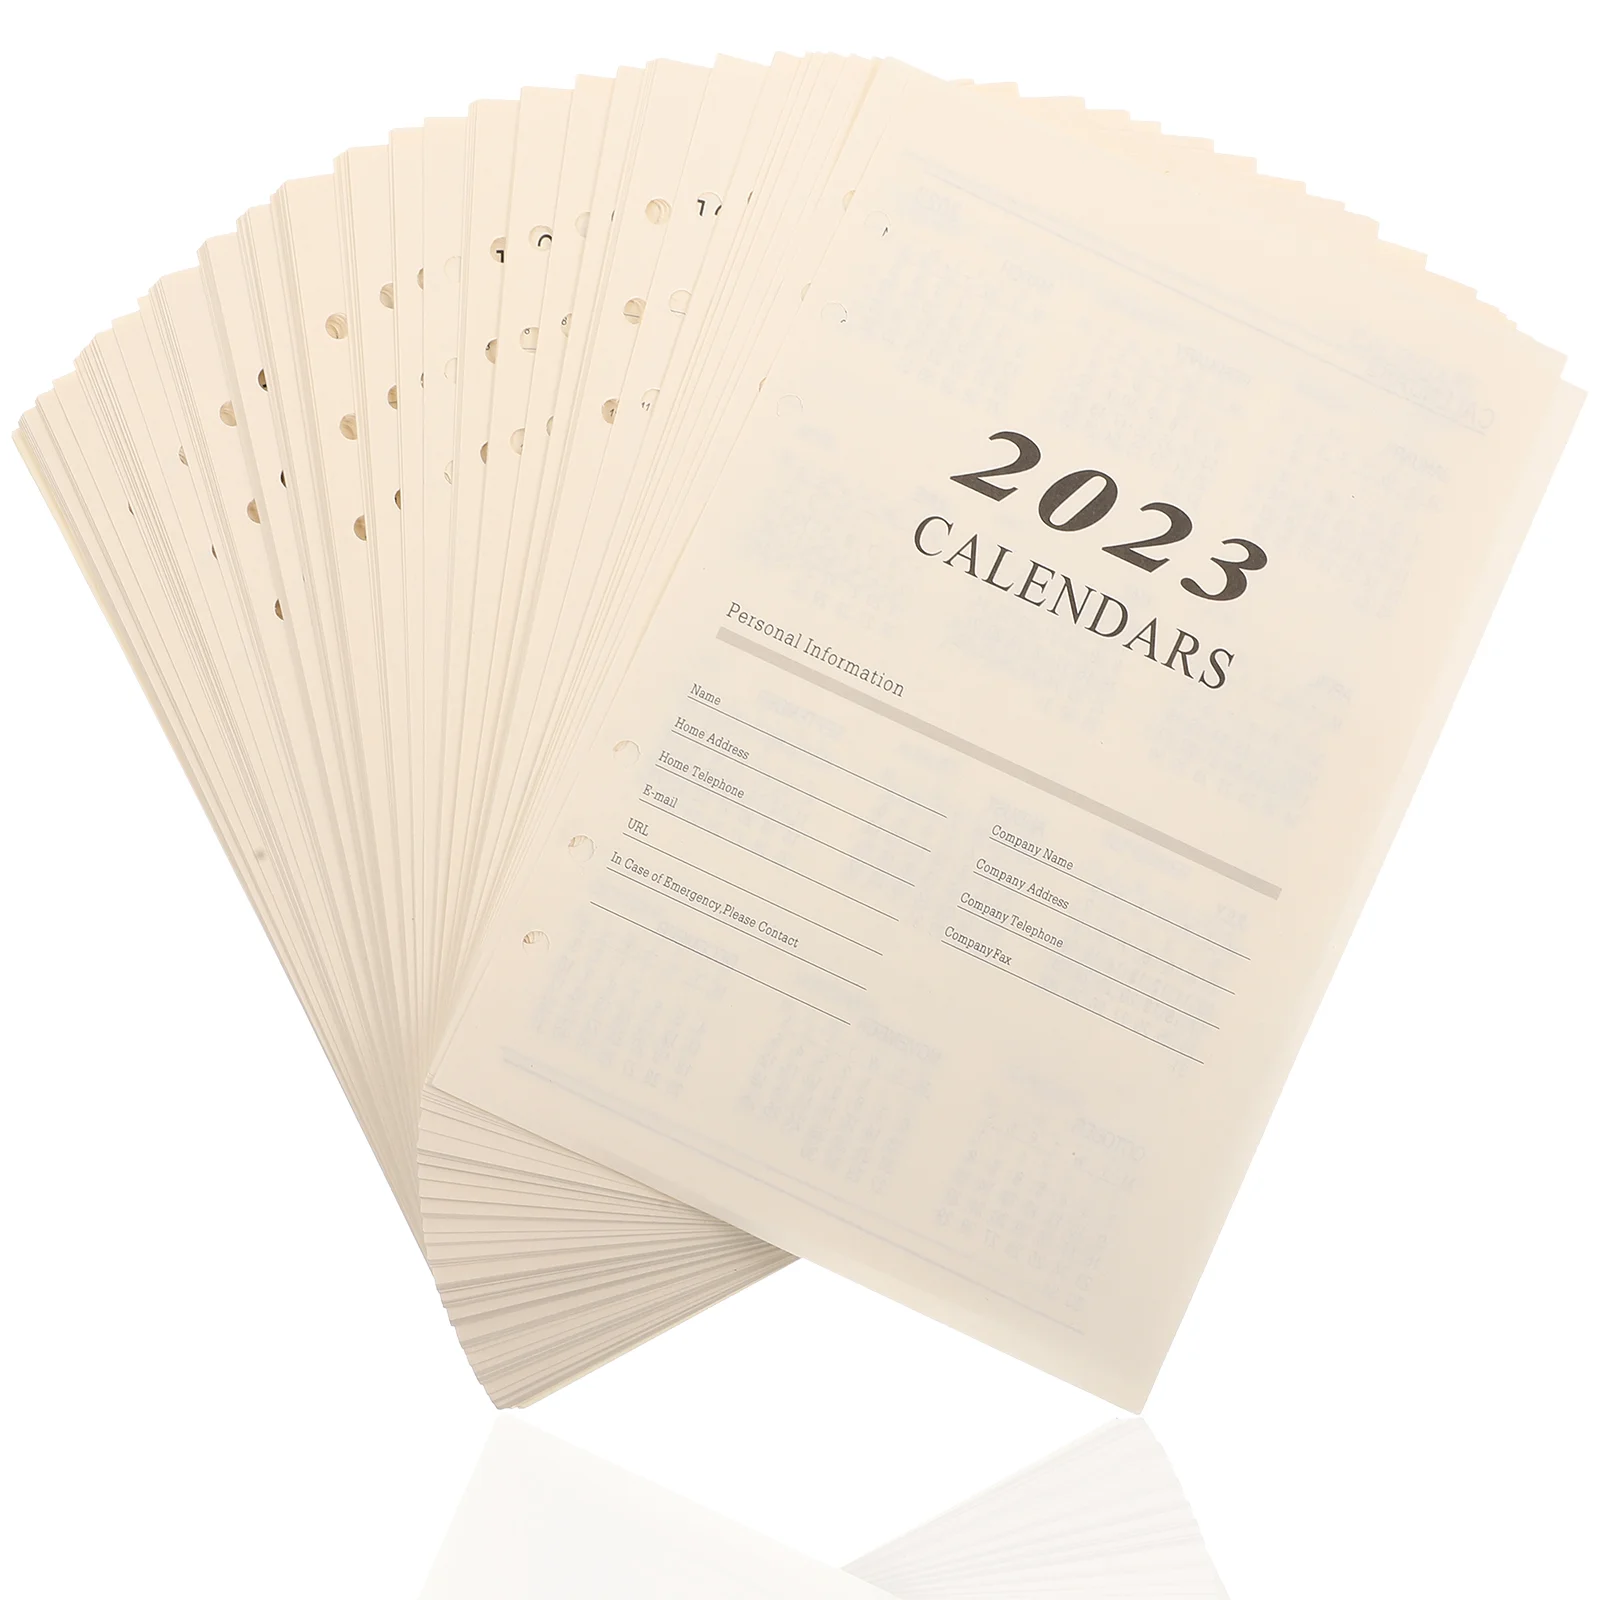 

176 листов, Странички для ежедневного оформления заметок, бытовые компактные аксессуары для заметок, компактные аксессуары для заметок на английском языке, свободные листья для ежедневного использования